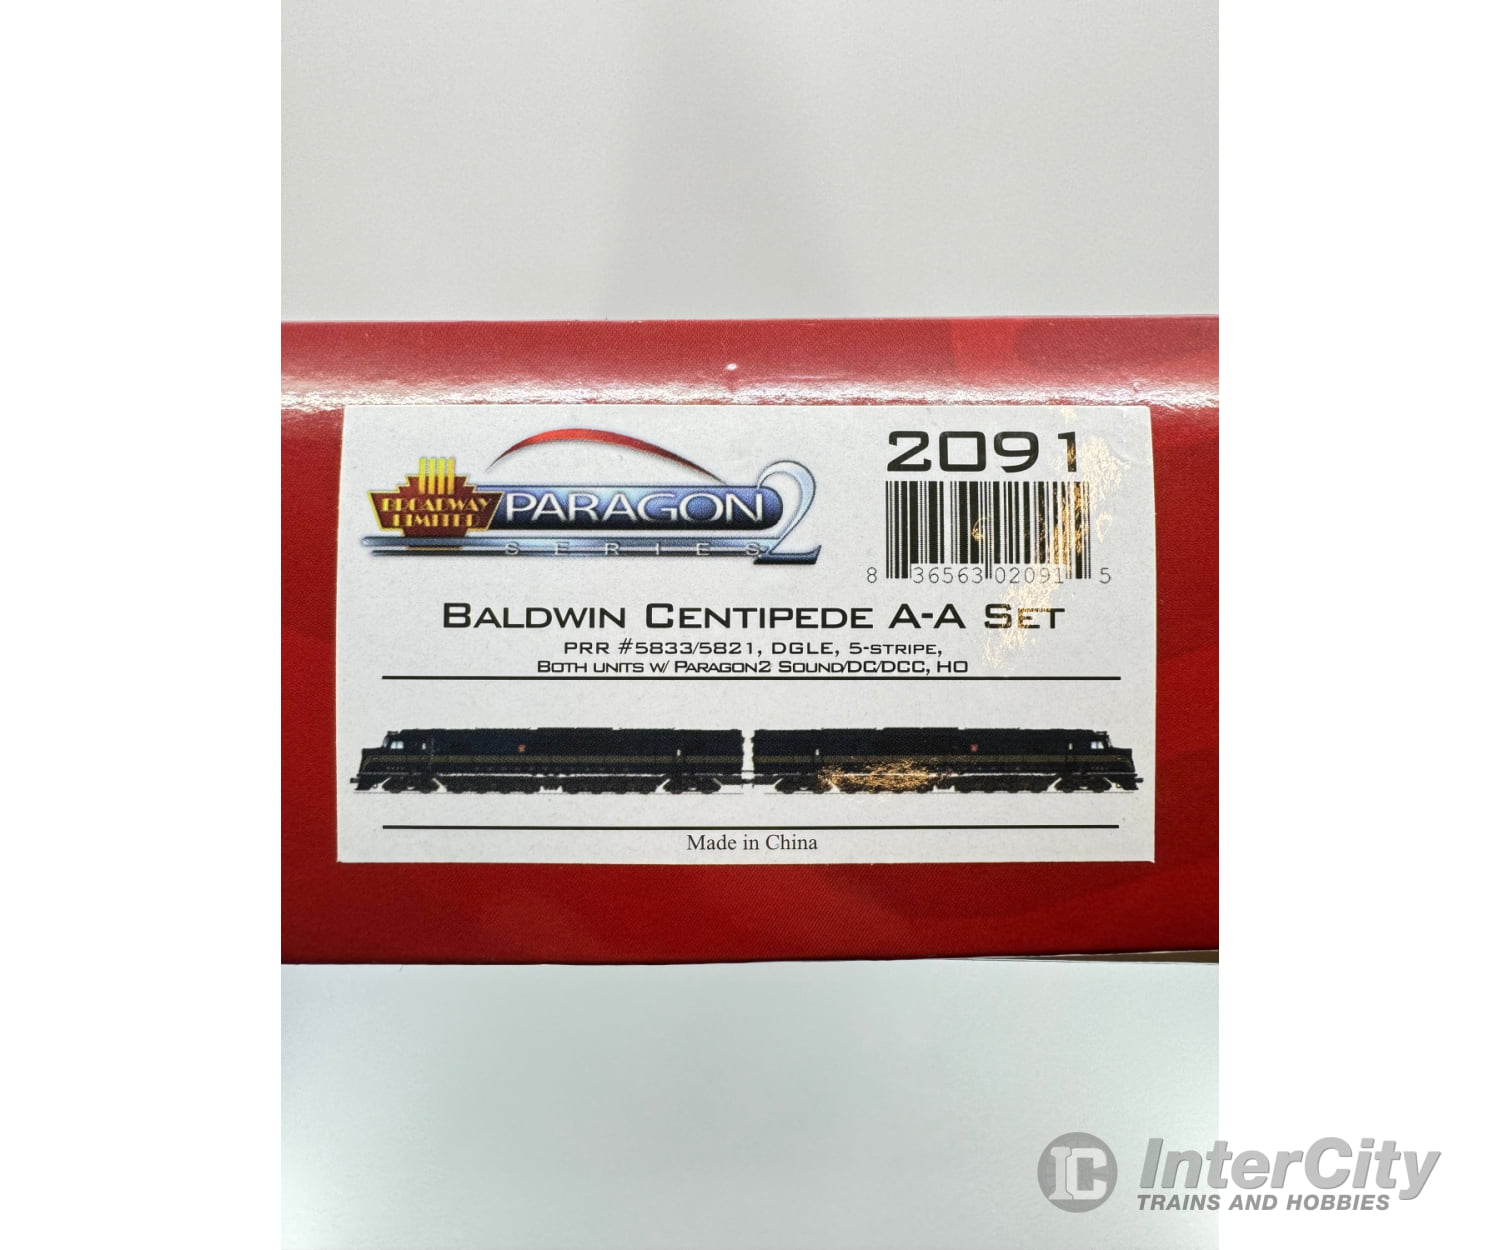 Broadway Limited 2091 Ho Baldwin Centipede A-A Set Pennsylvania Railroad (Prr) 5839/5821 Dcc &